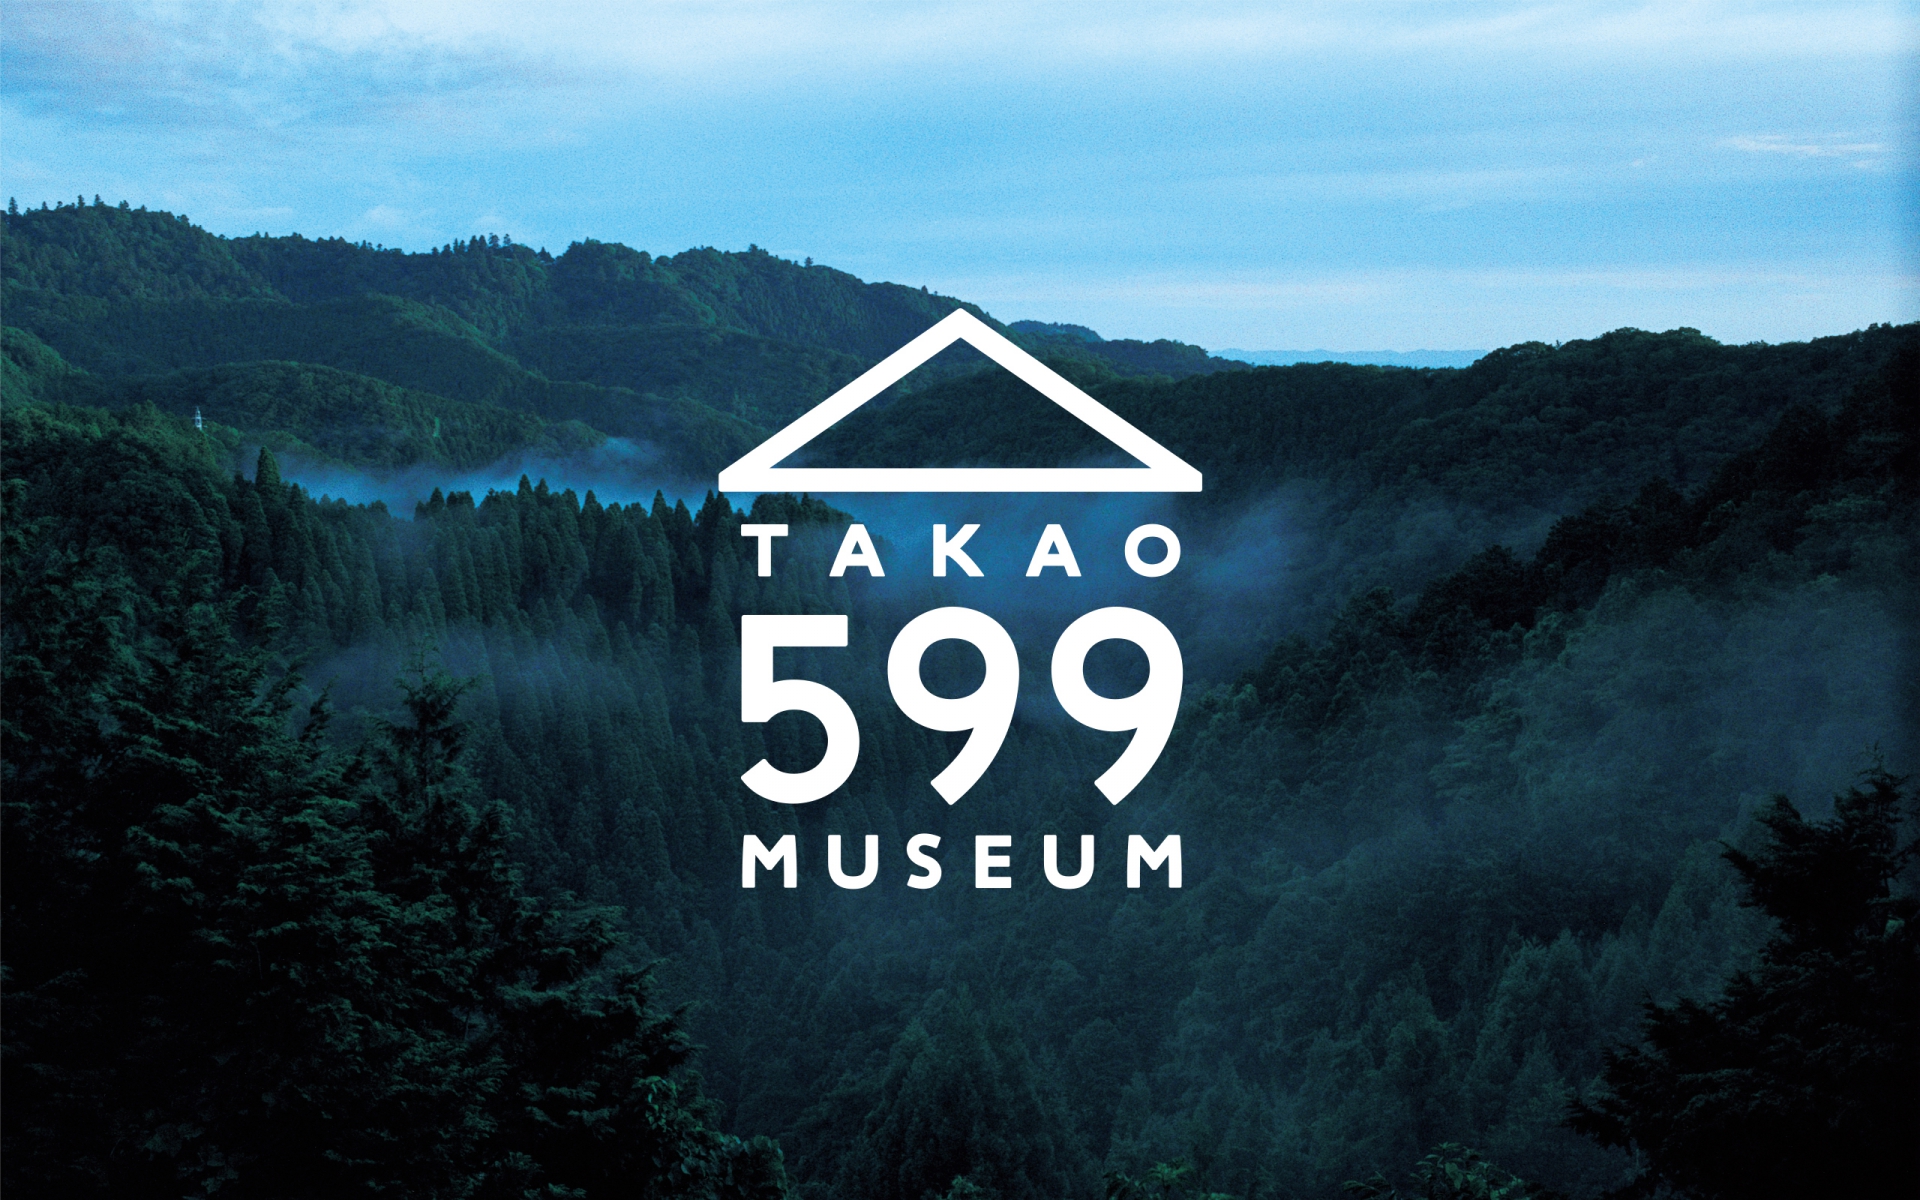 https://daikoku.ndc.co.jp/work/takao-599-museum/